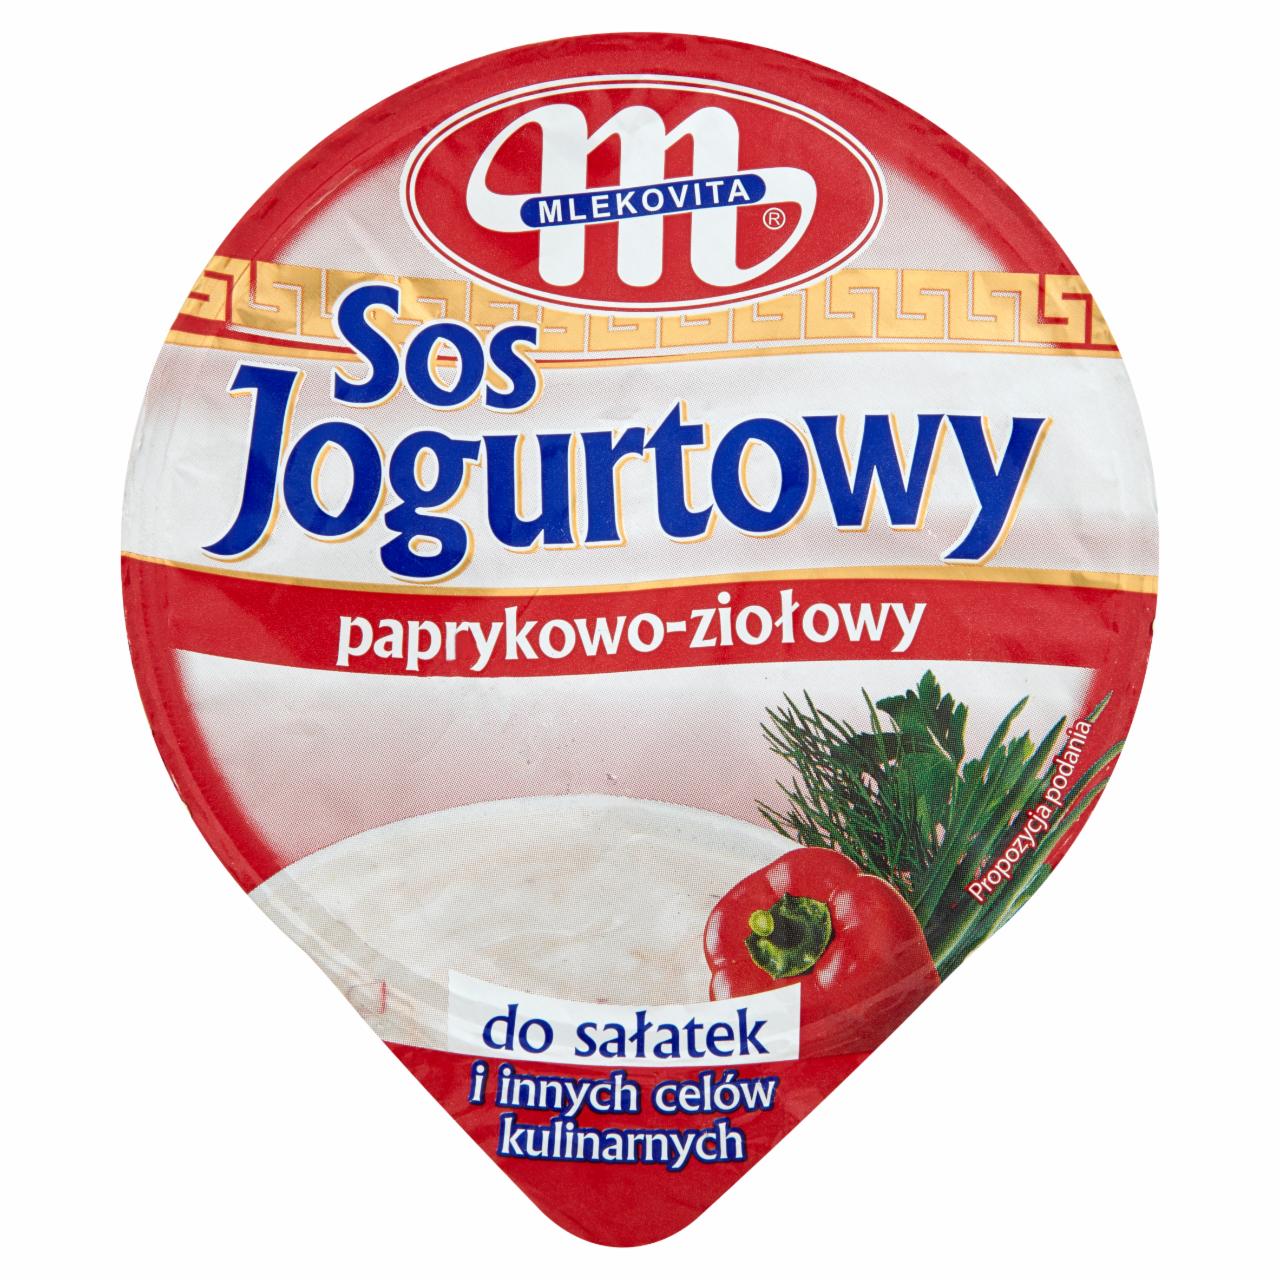 Zdjęcia - Mlekovita Sos jogurtowy paprykowo-ziołowy 200 g